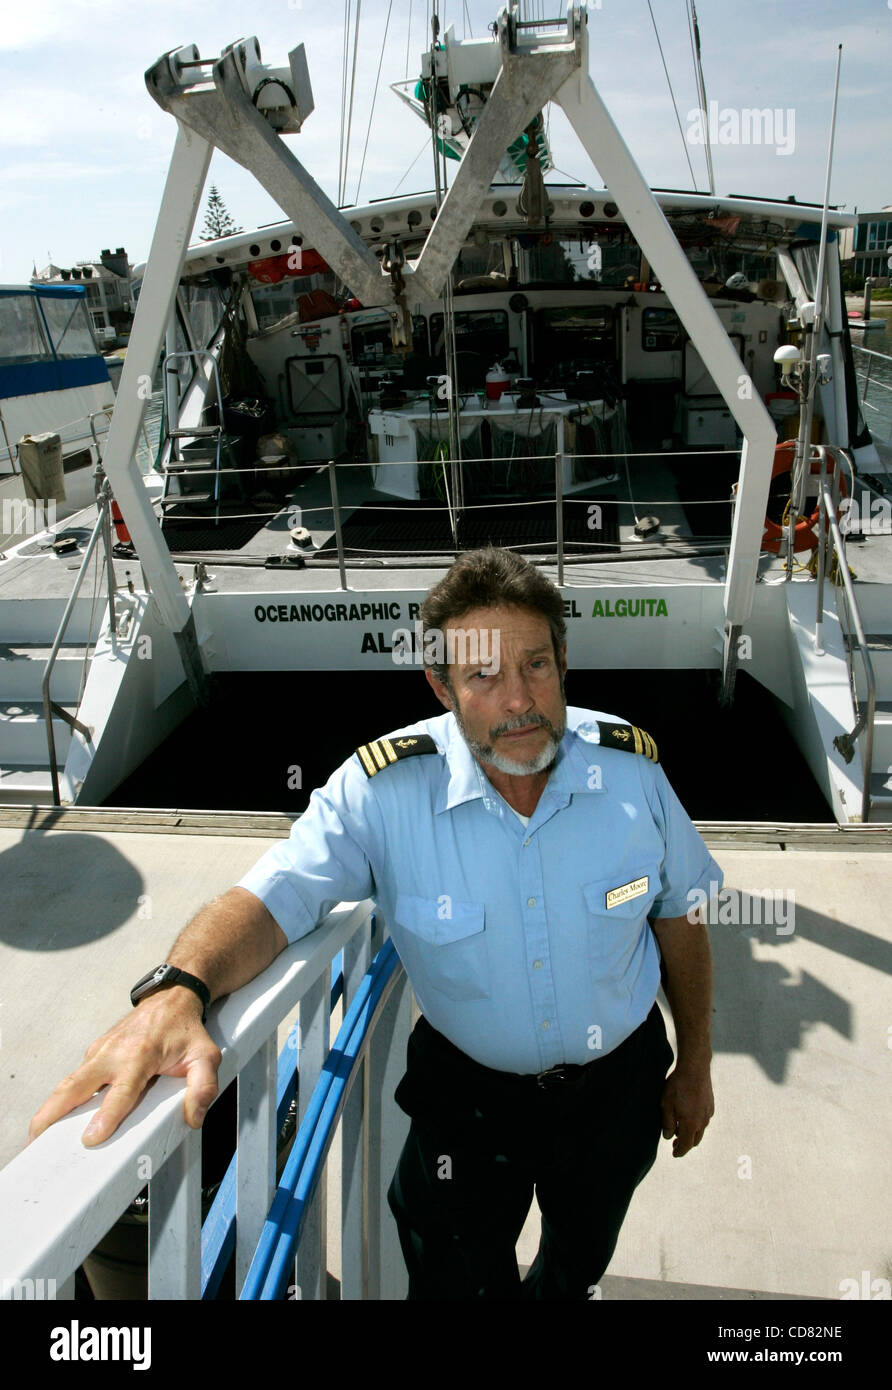 Apr 14, 2008 - Long Beach, CA, USA CHARLES MOORE au quai avec son catamaran de recherche nommé l'Alguita. Moore est un chercheur marine crédité de la découverte de la "Grande Plaque de déchets du Pacifique", une décharge flottante de la taille de l'Australie créé par les courants du Pacifique. Crédit obligatoire : P Banque D'Images